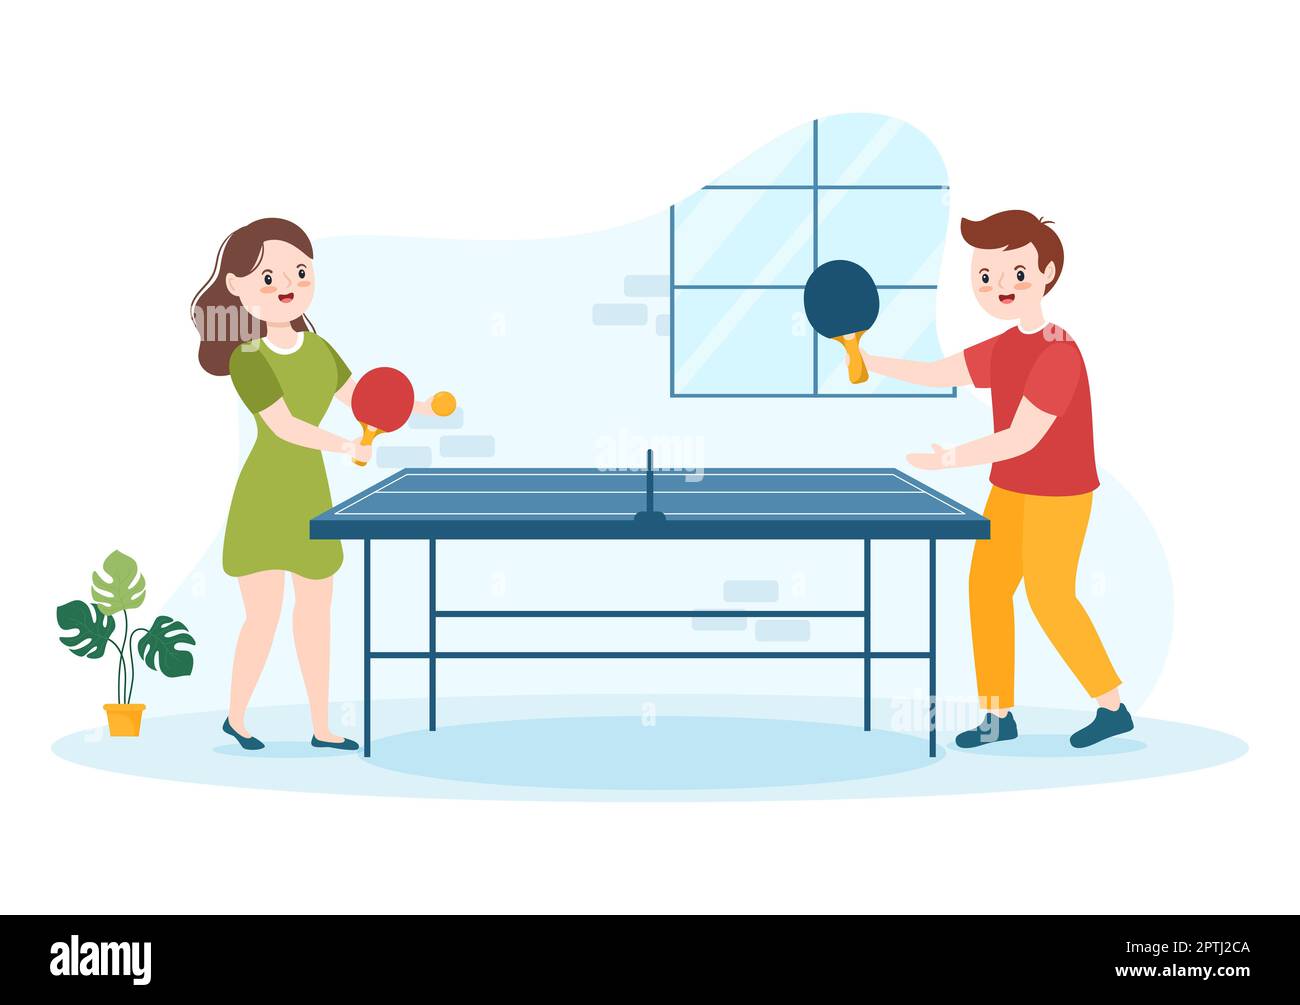 Illustration Des Enfants Jouant Au Tennis De Table